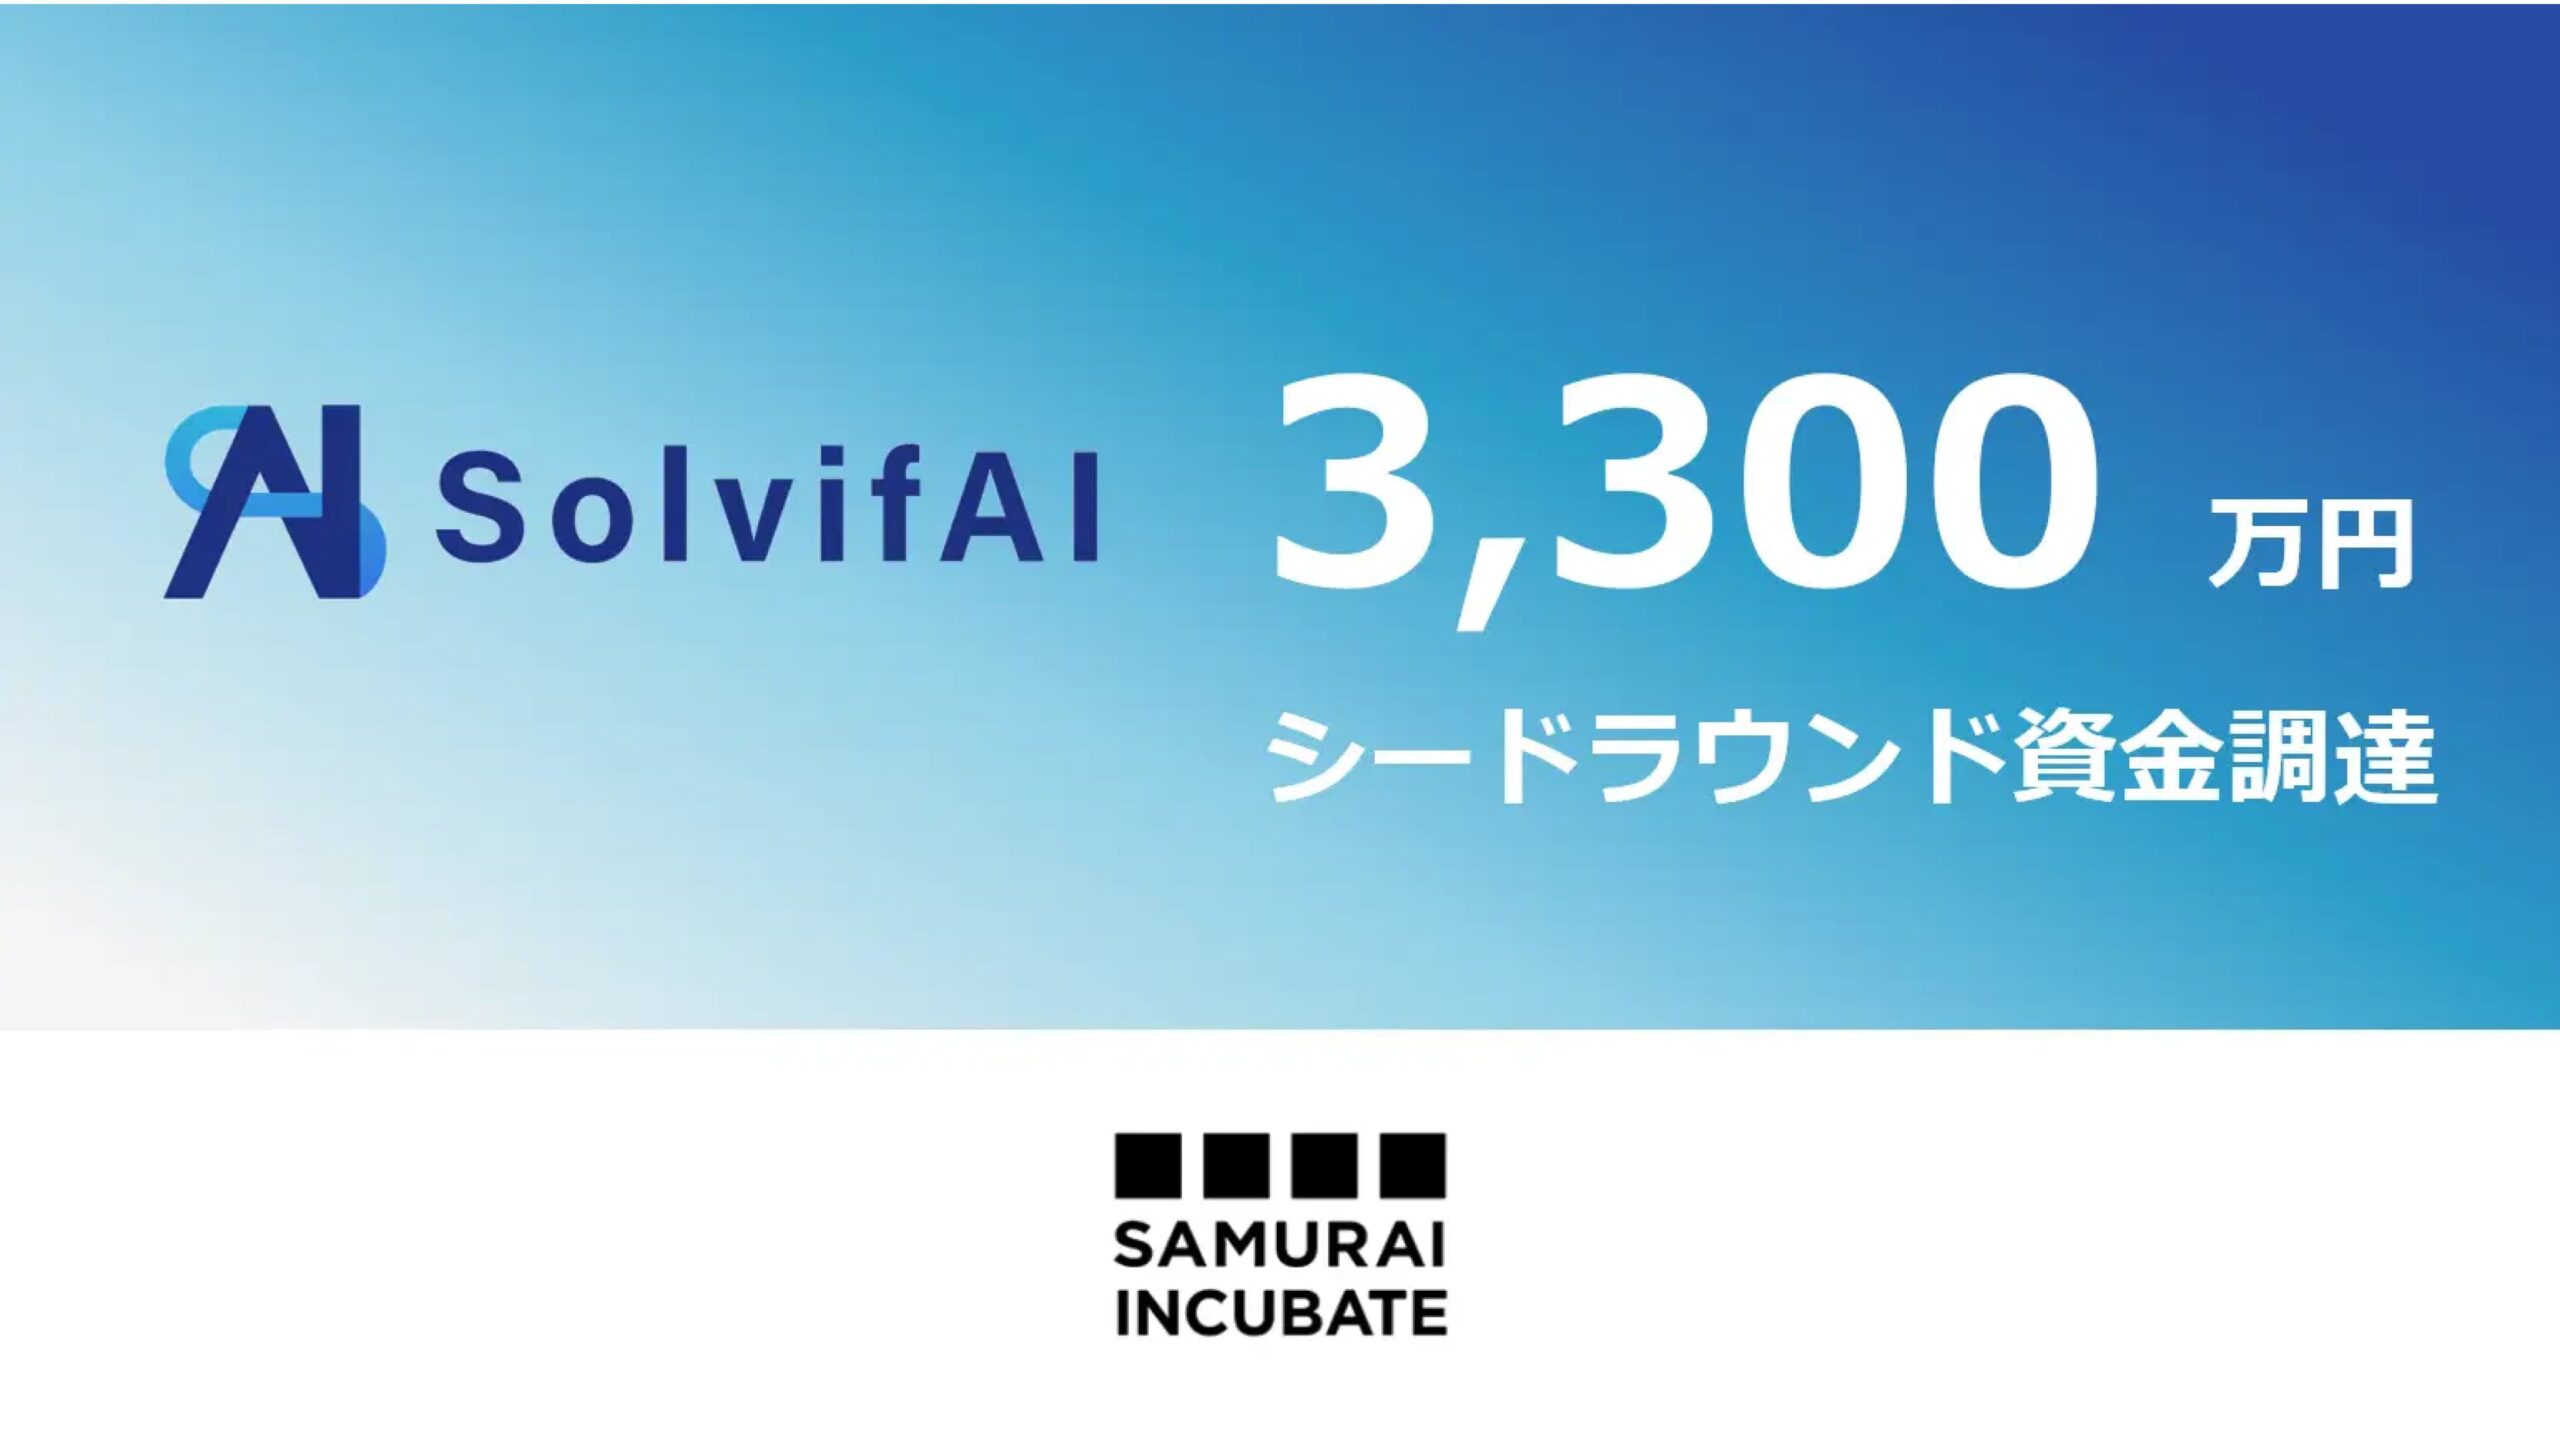 生成AI搭載問題解決SaaSツールを提供するSolvifAI株式会社がシードラウンドにて3,300万円の資金調達